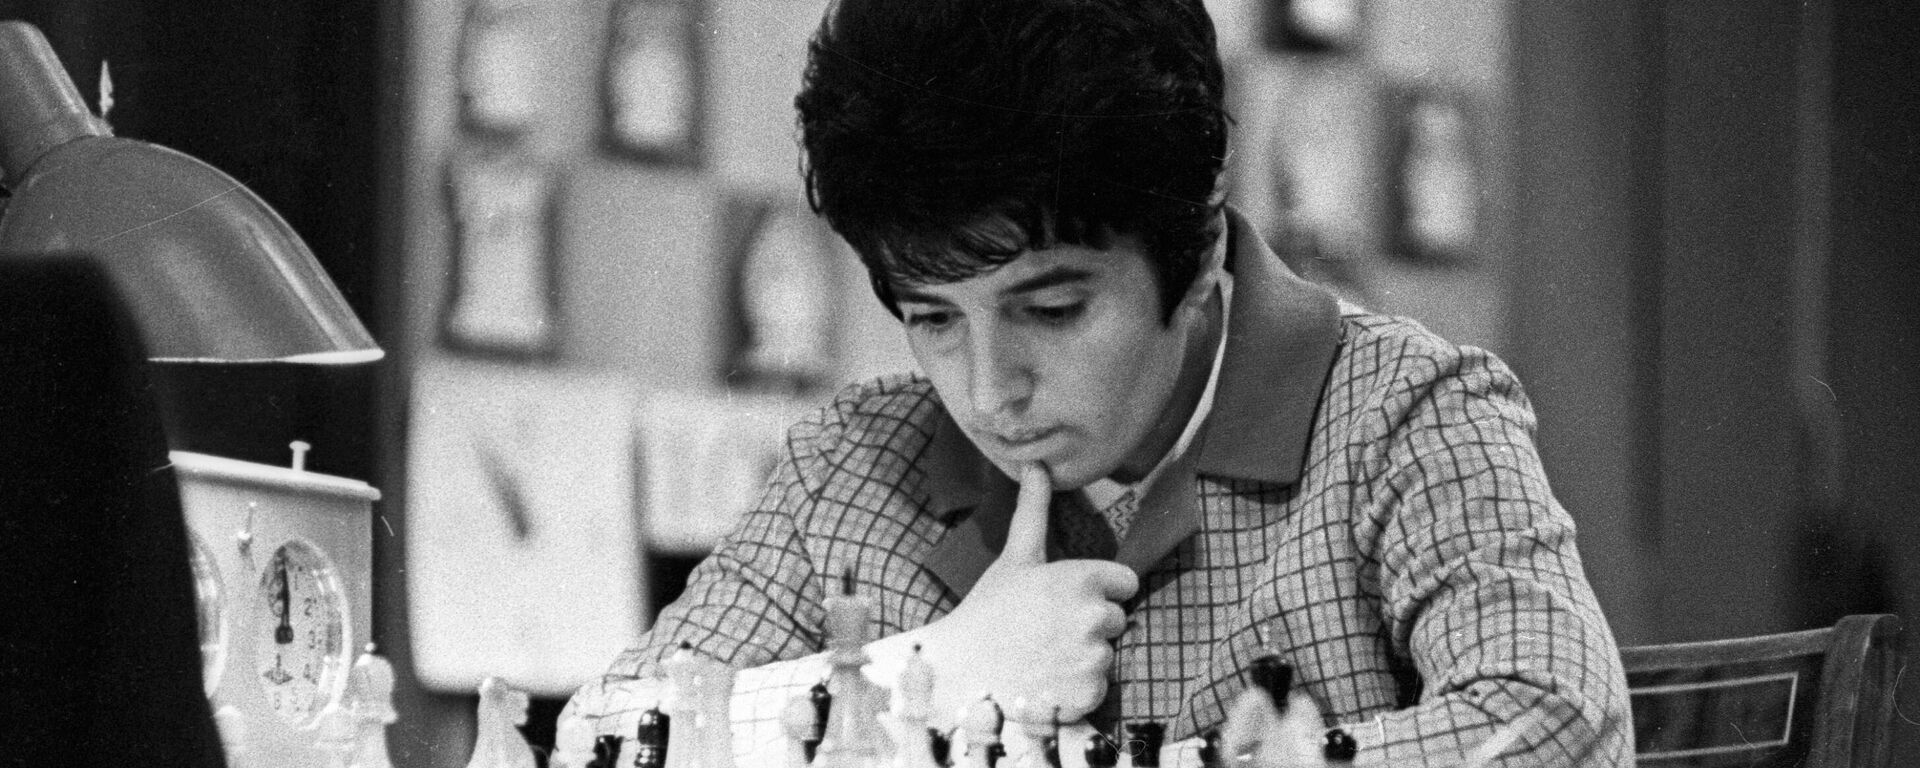 La ajedrecista georgiana Nona Gaprindashvili en 1970 - Sputnik Mundo, 1920, 17.09.2021